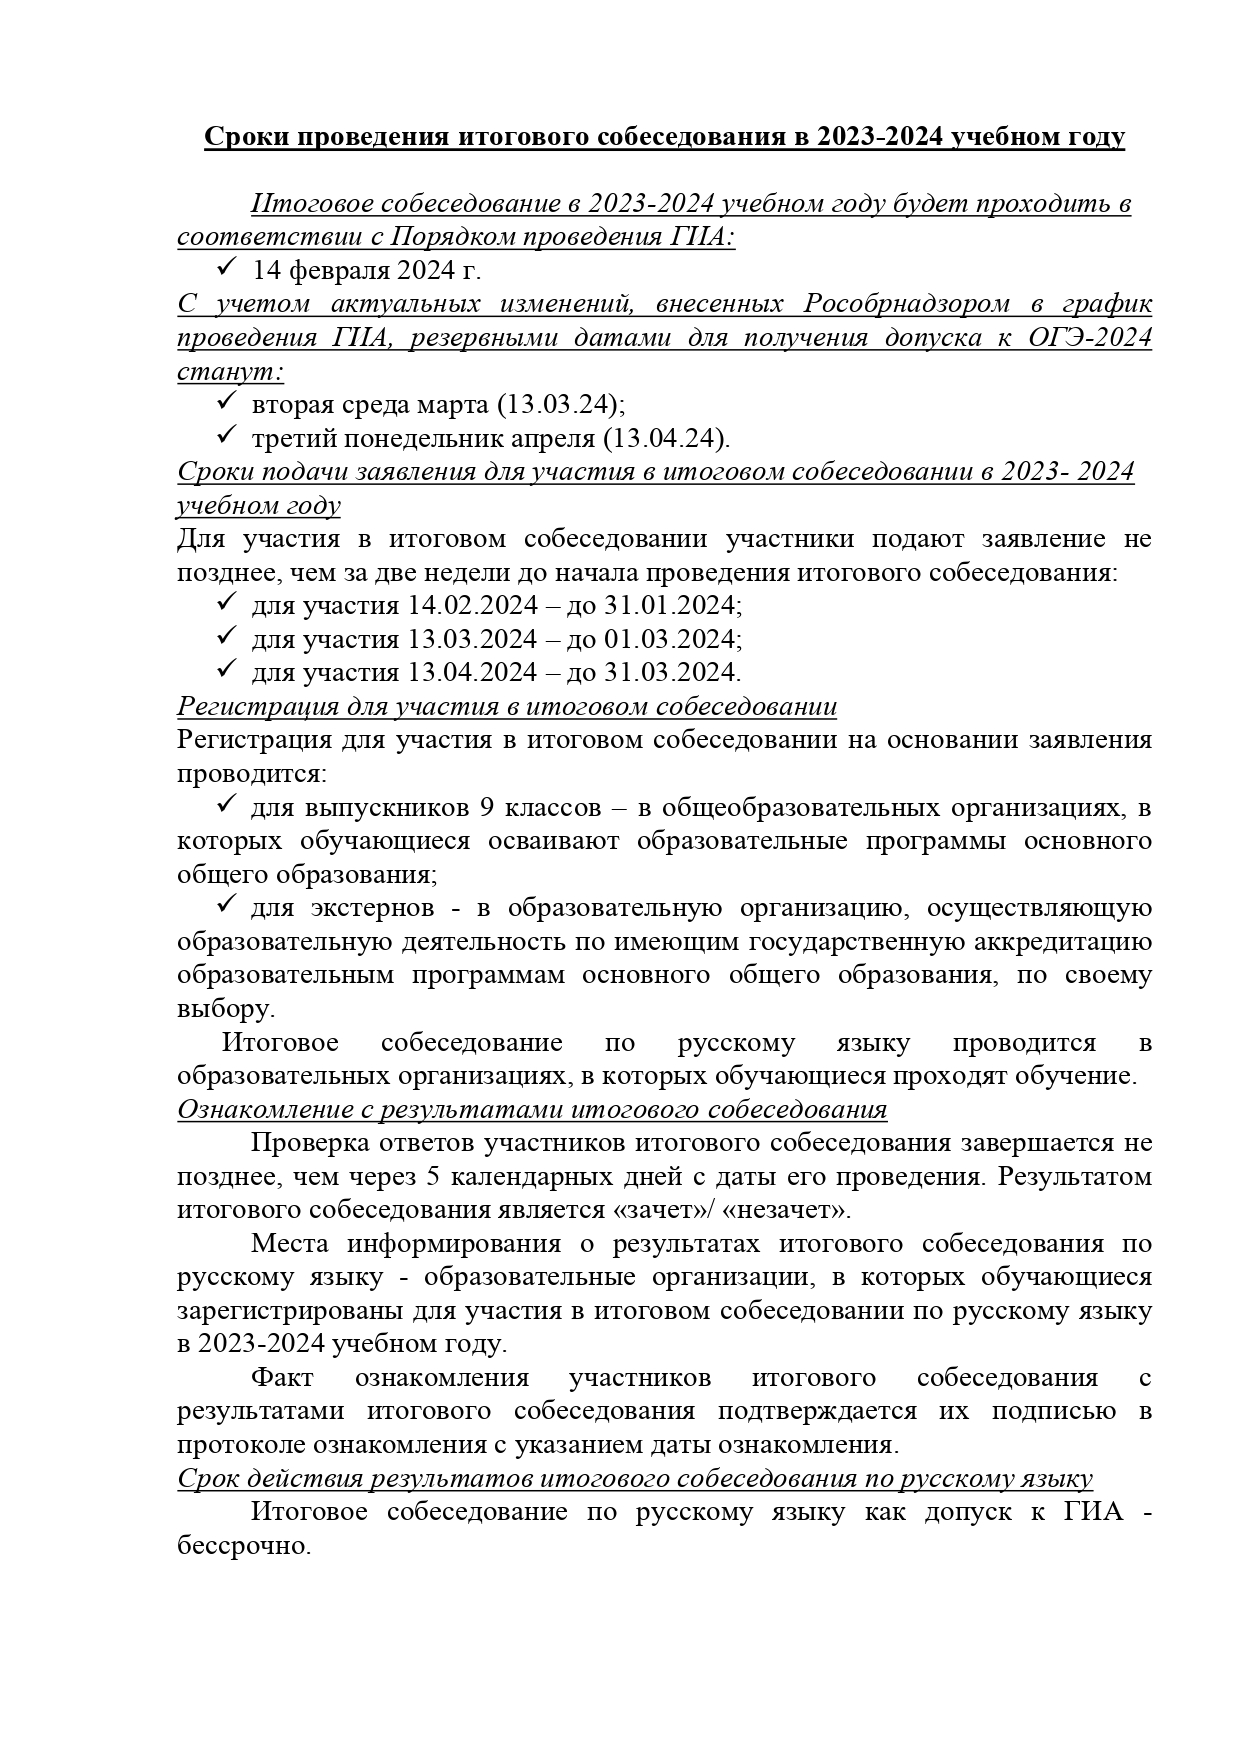 Итоговое собеседование по русскому языку в 2024 году.